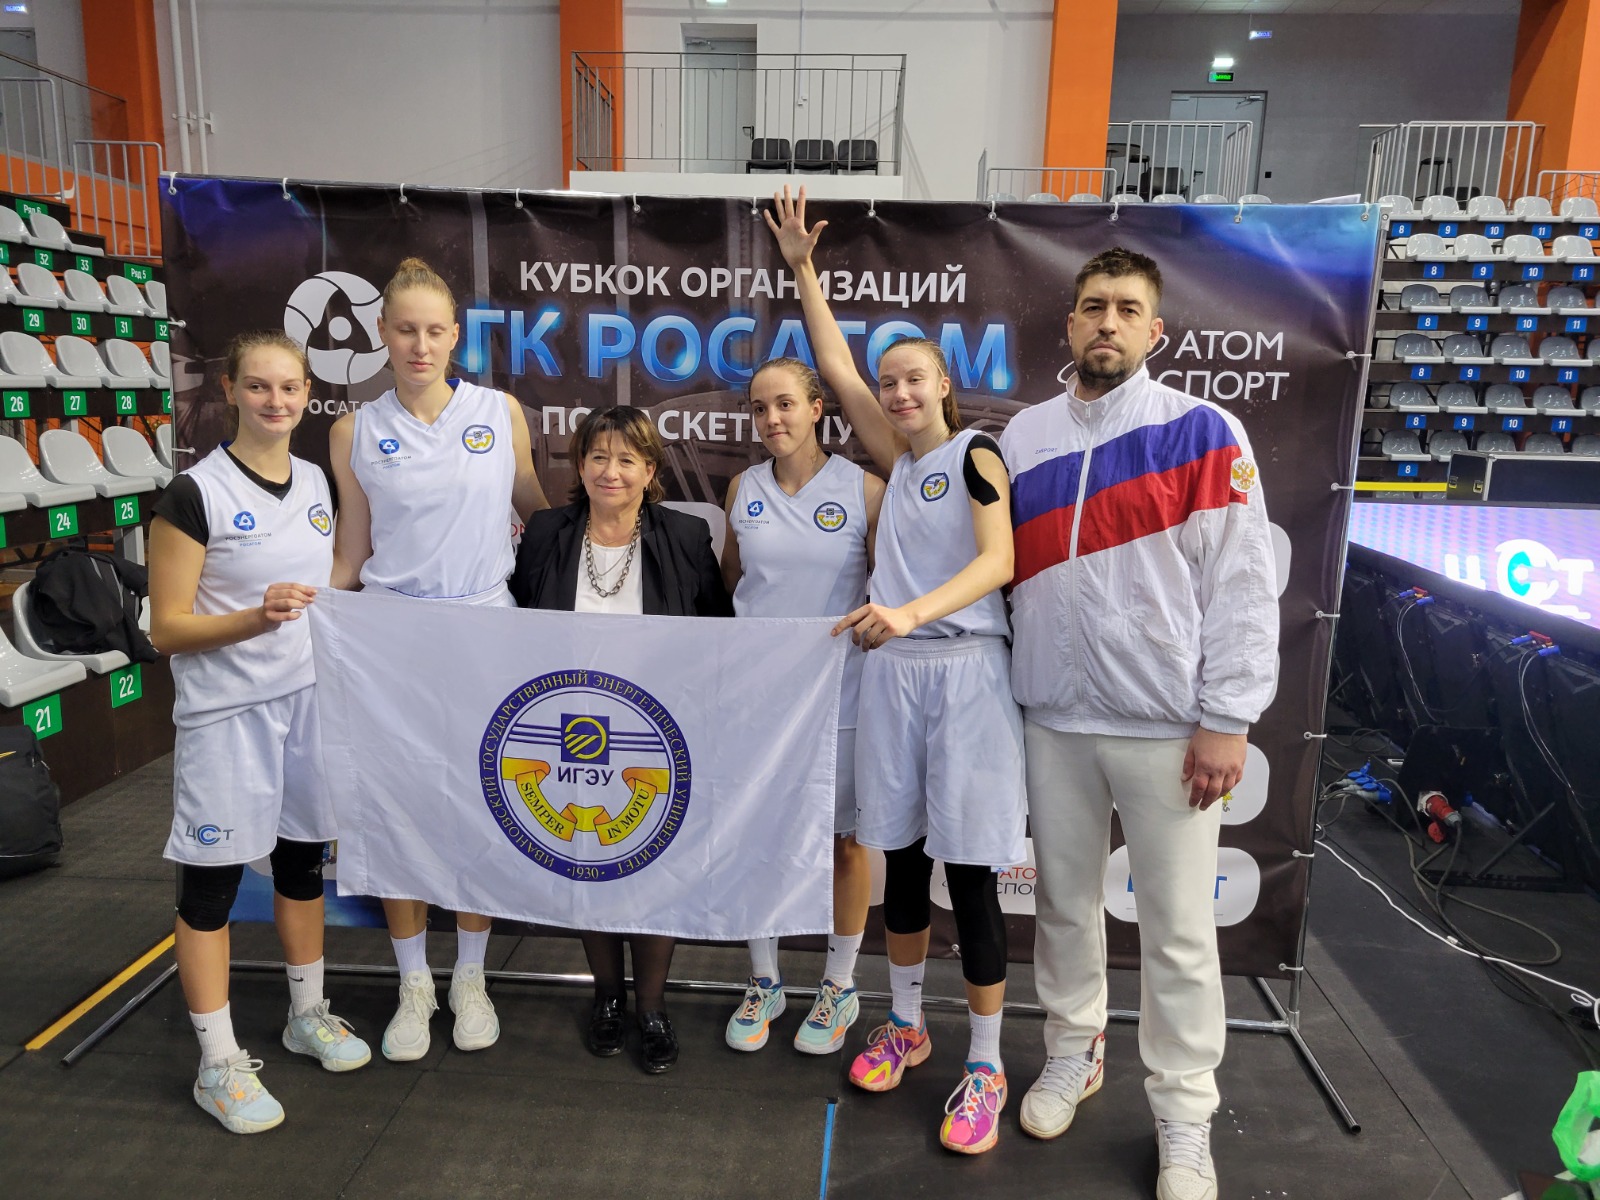 Ивановские баскетболистки победили на домашнем этапе студенческих соревнований «Оранжевый атом».